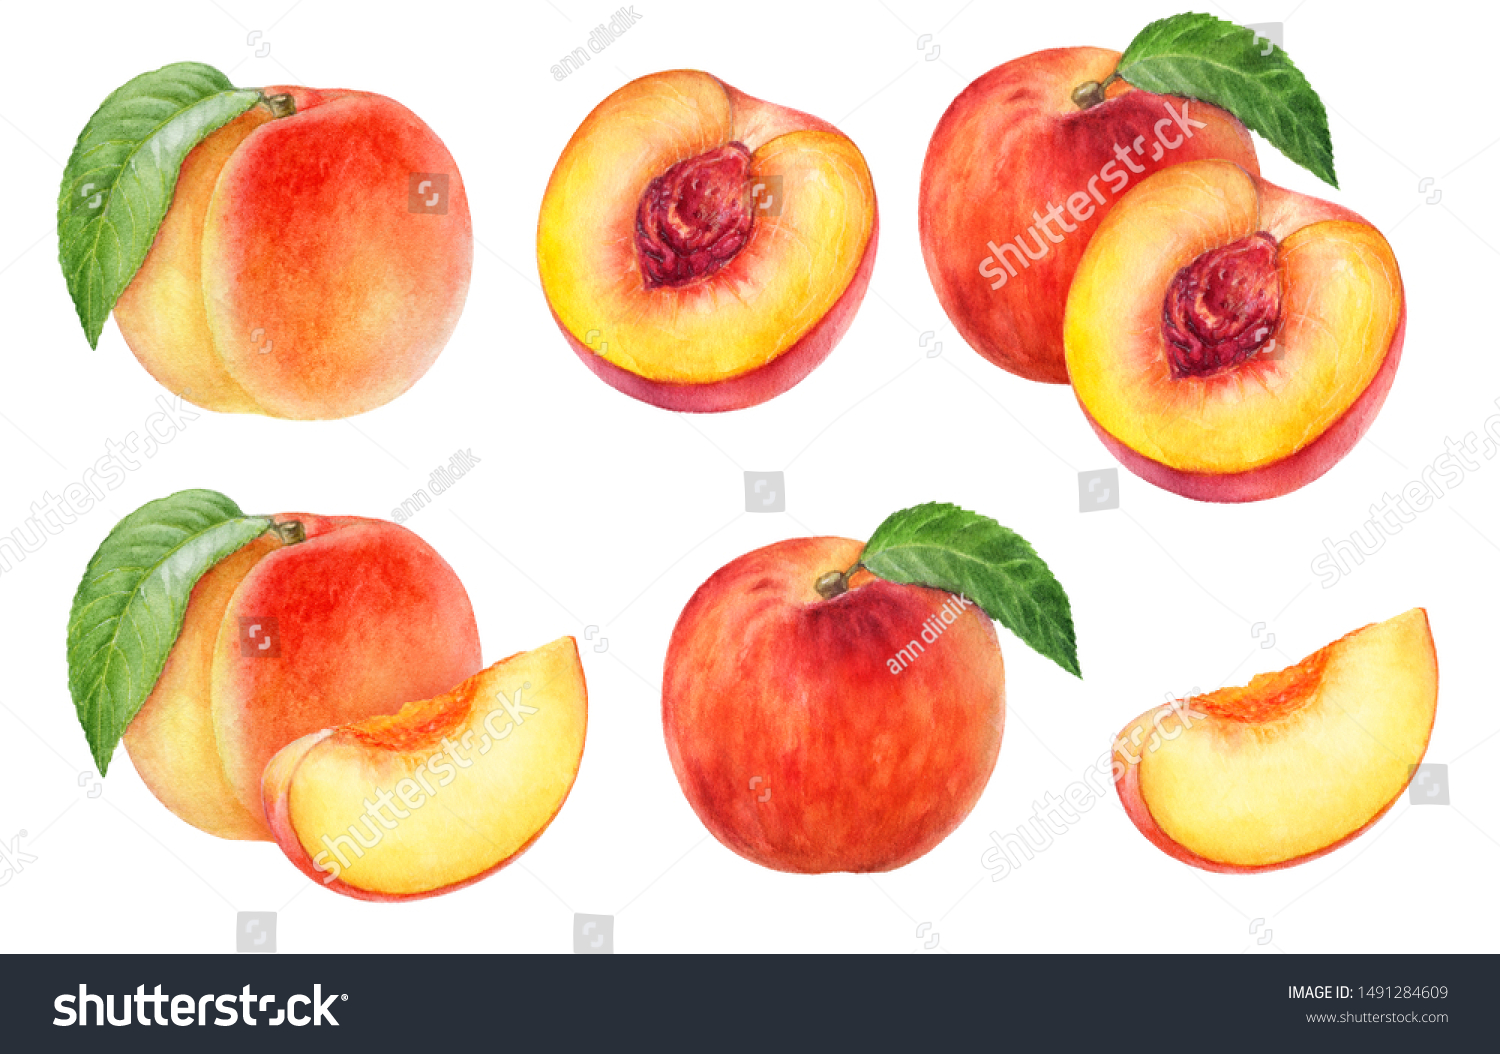 Предметная картинка персик в разрезе для малышей